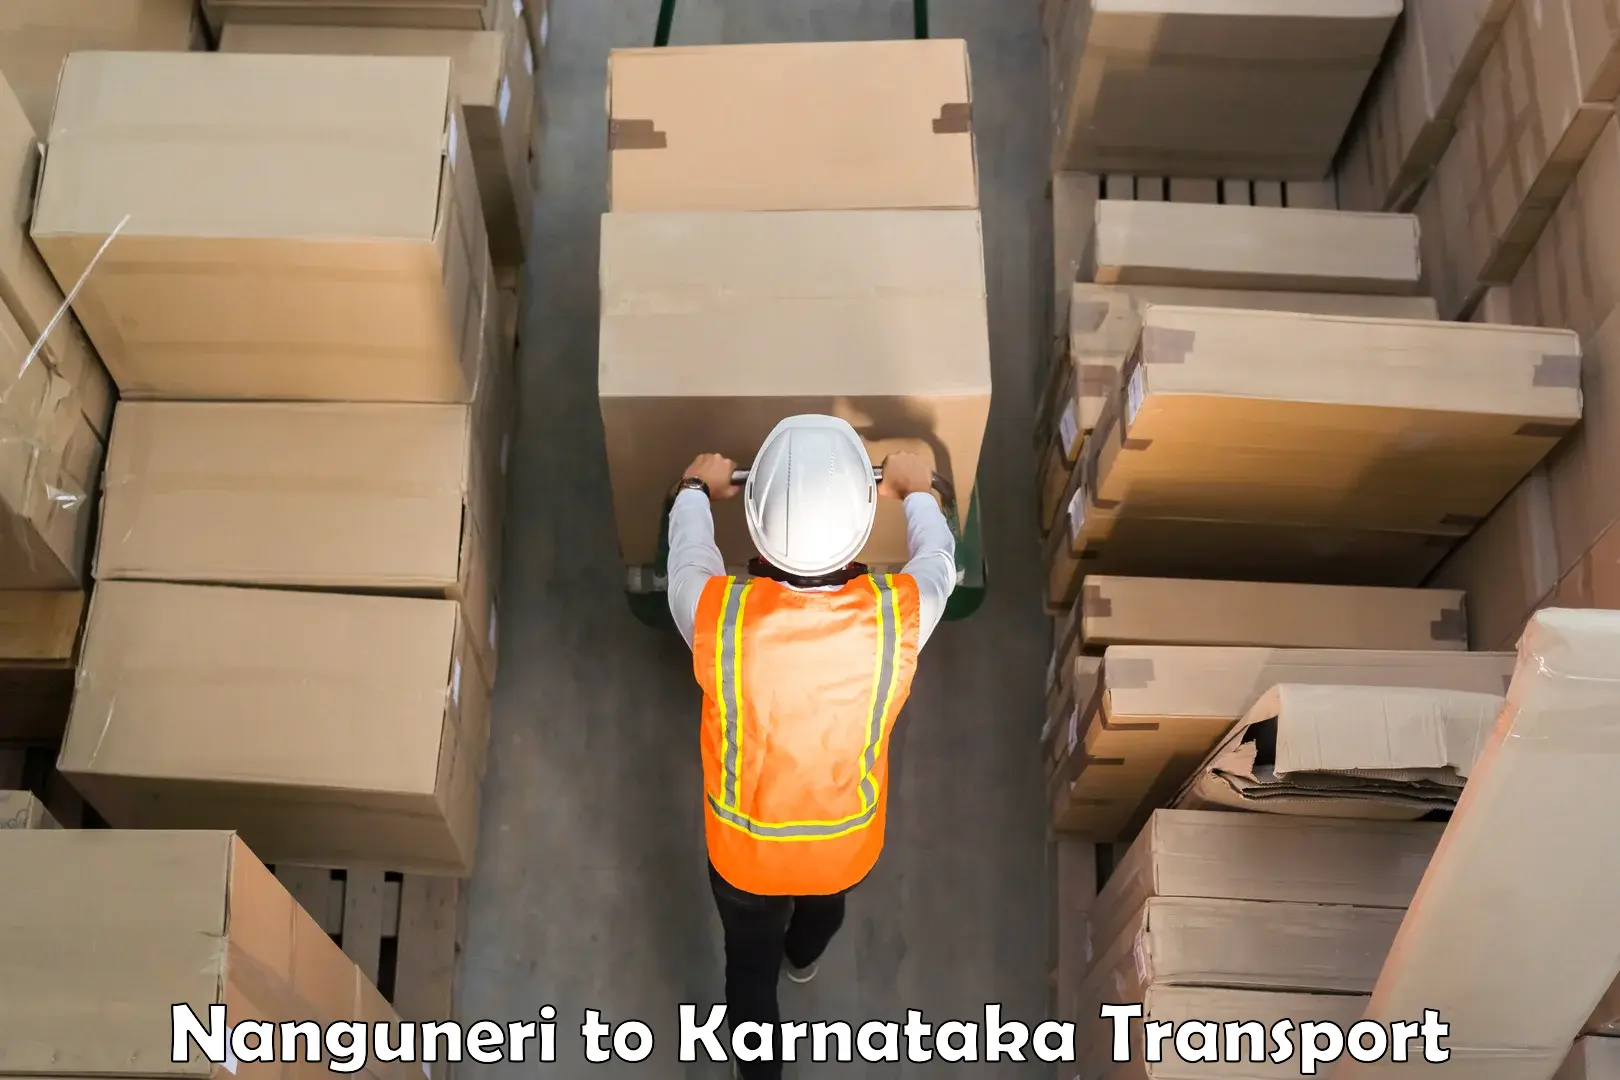 Container transport service Nanguneri to Kanjarakatte